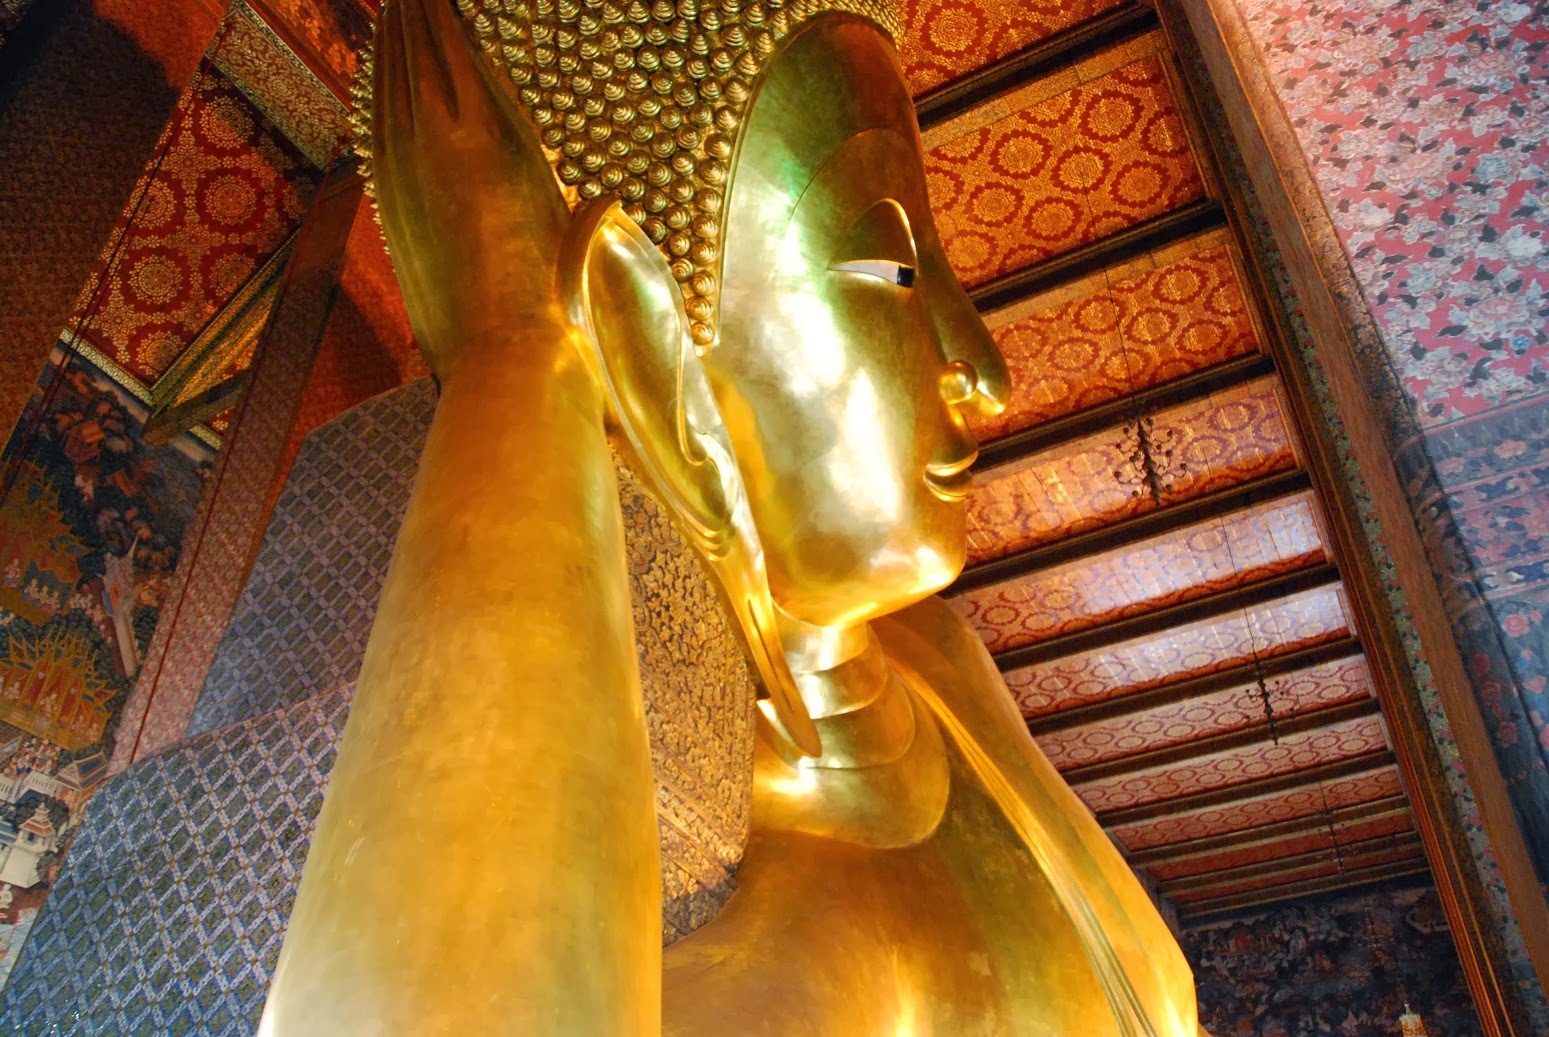 Tajlandia - Bangkok - Wat Pho